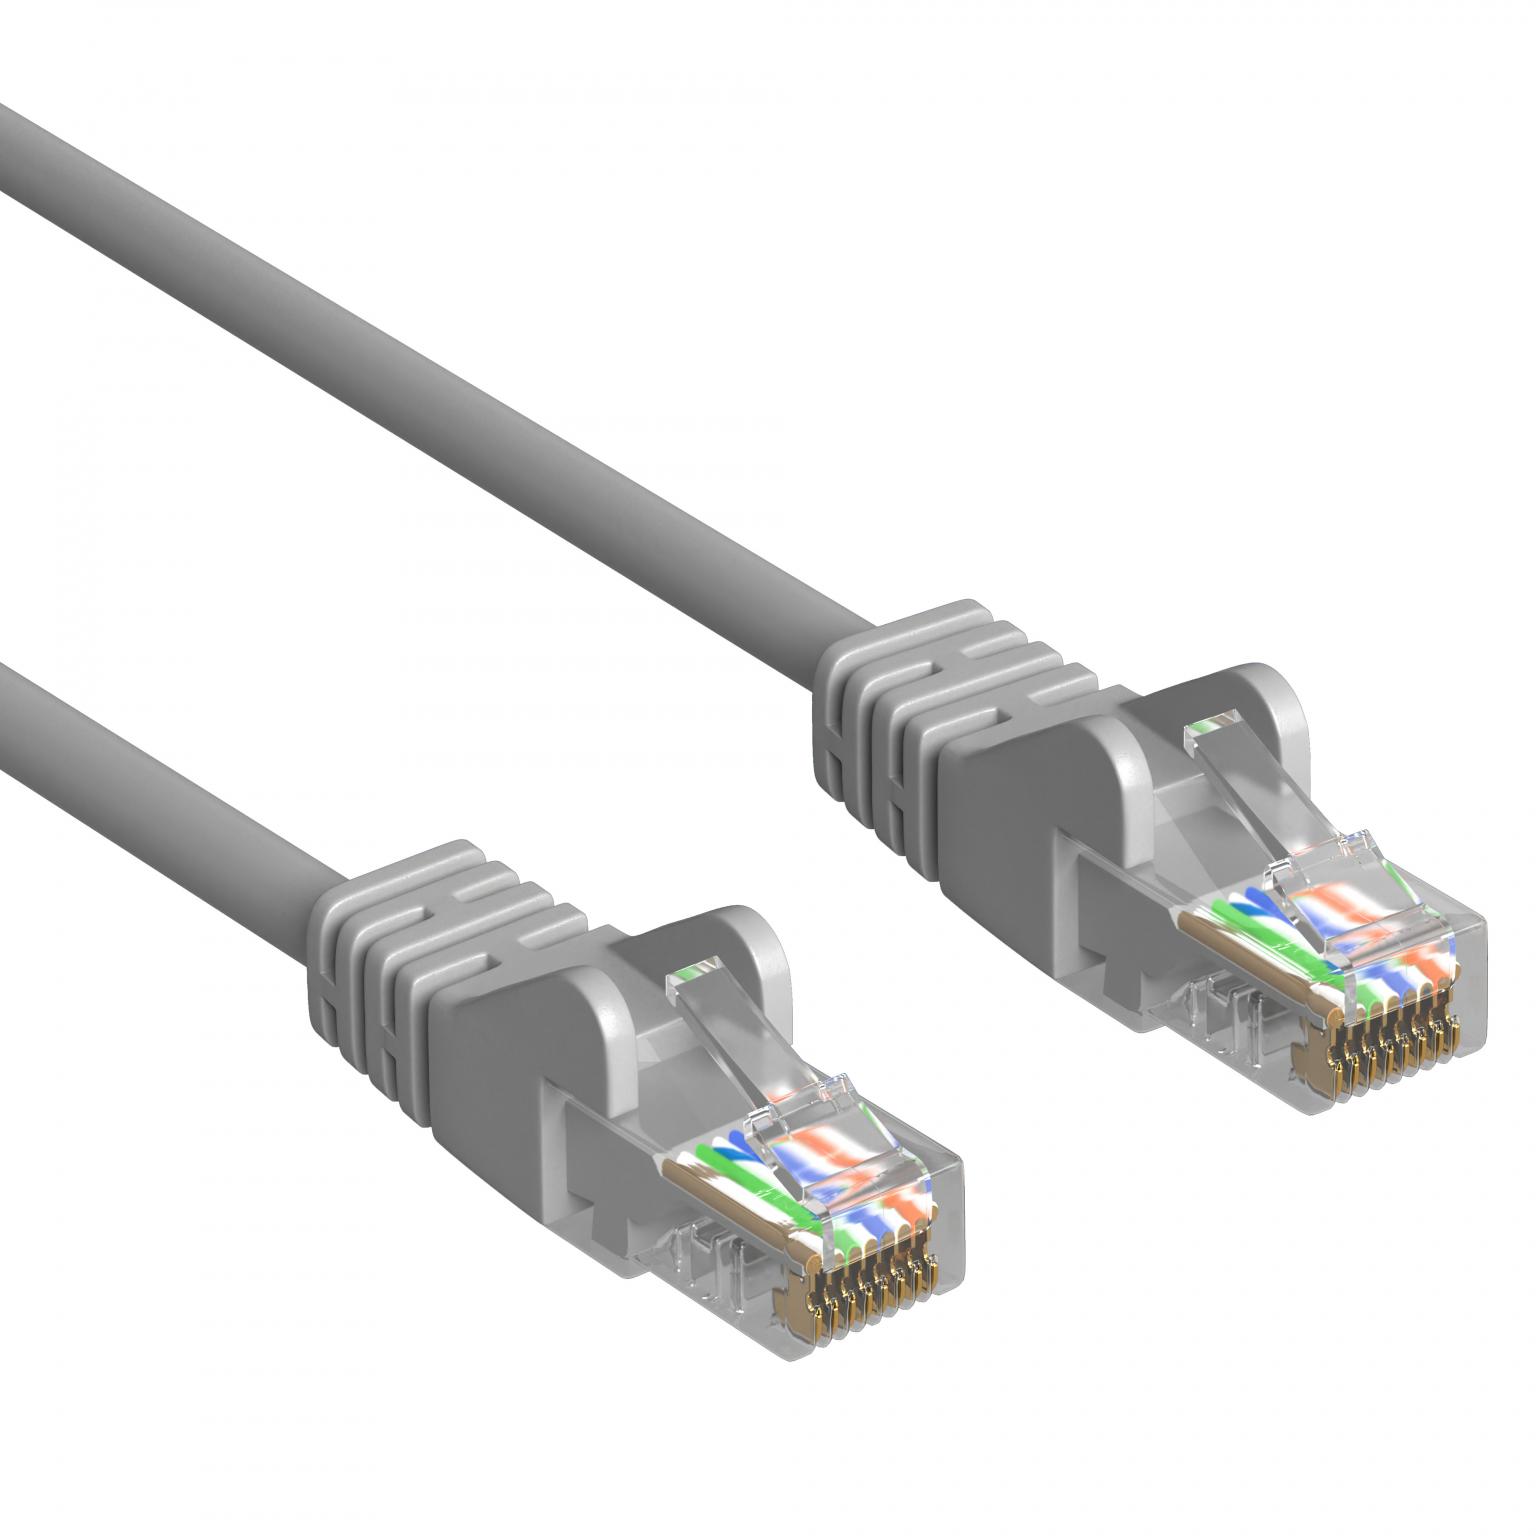 DSL-Netzwerkkabel - 3 Meter - Grau - Allteq